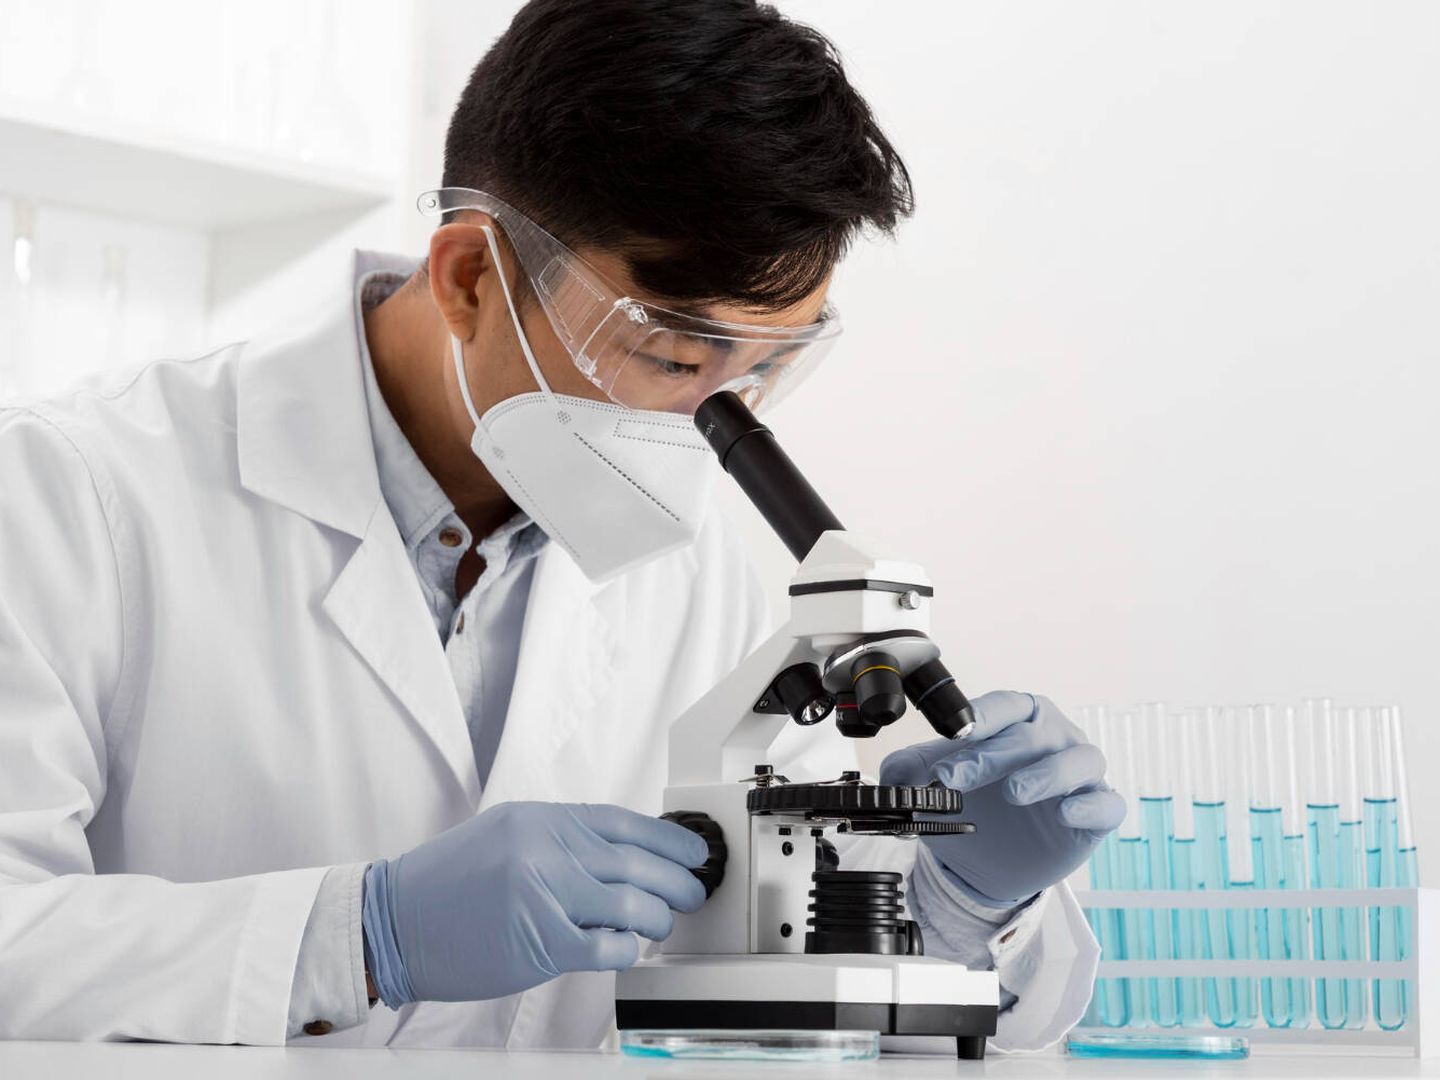 La investigación biológica básica es esencial para la mejora de la salud humana. (Freepik)